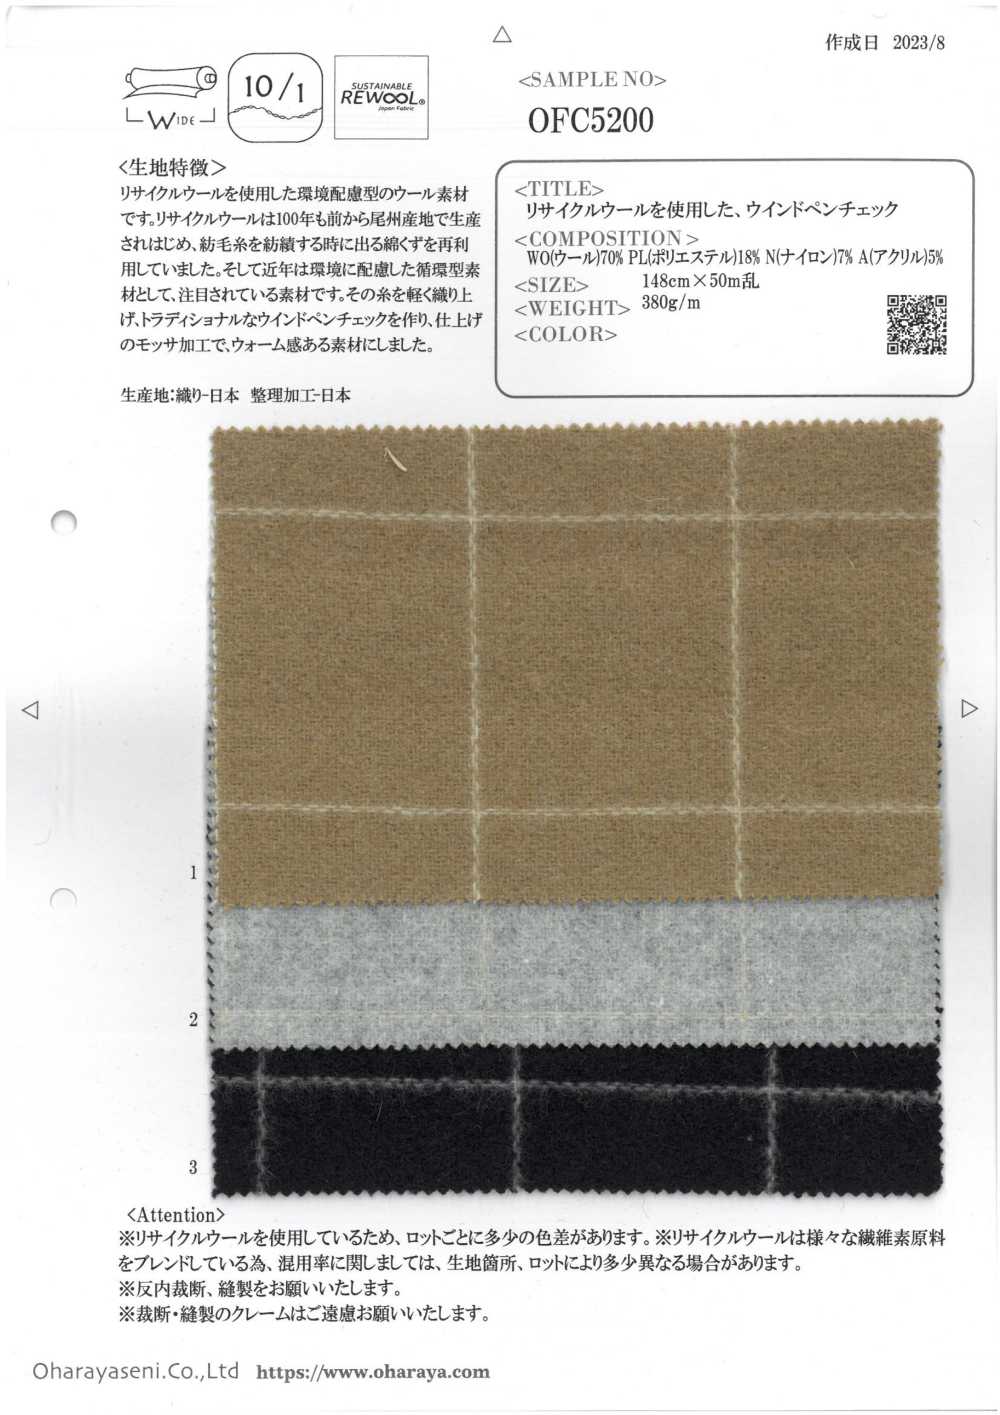 OFC5200 Verificação Da Caneta De Vento Usando Lã Reciclada[Têxtil / Tecido] Oharayaseni